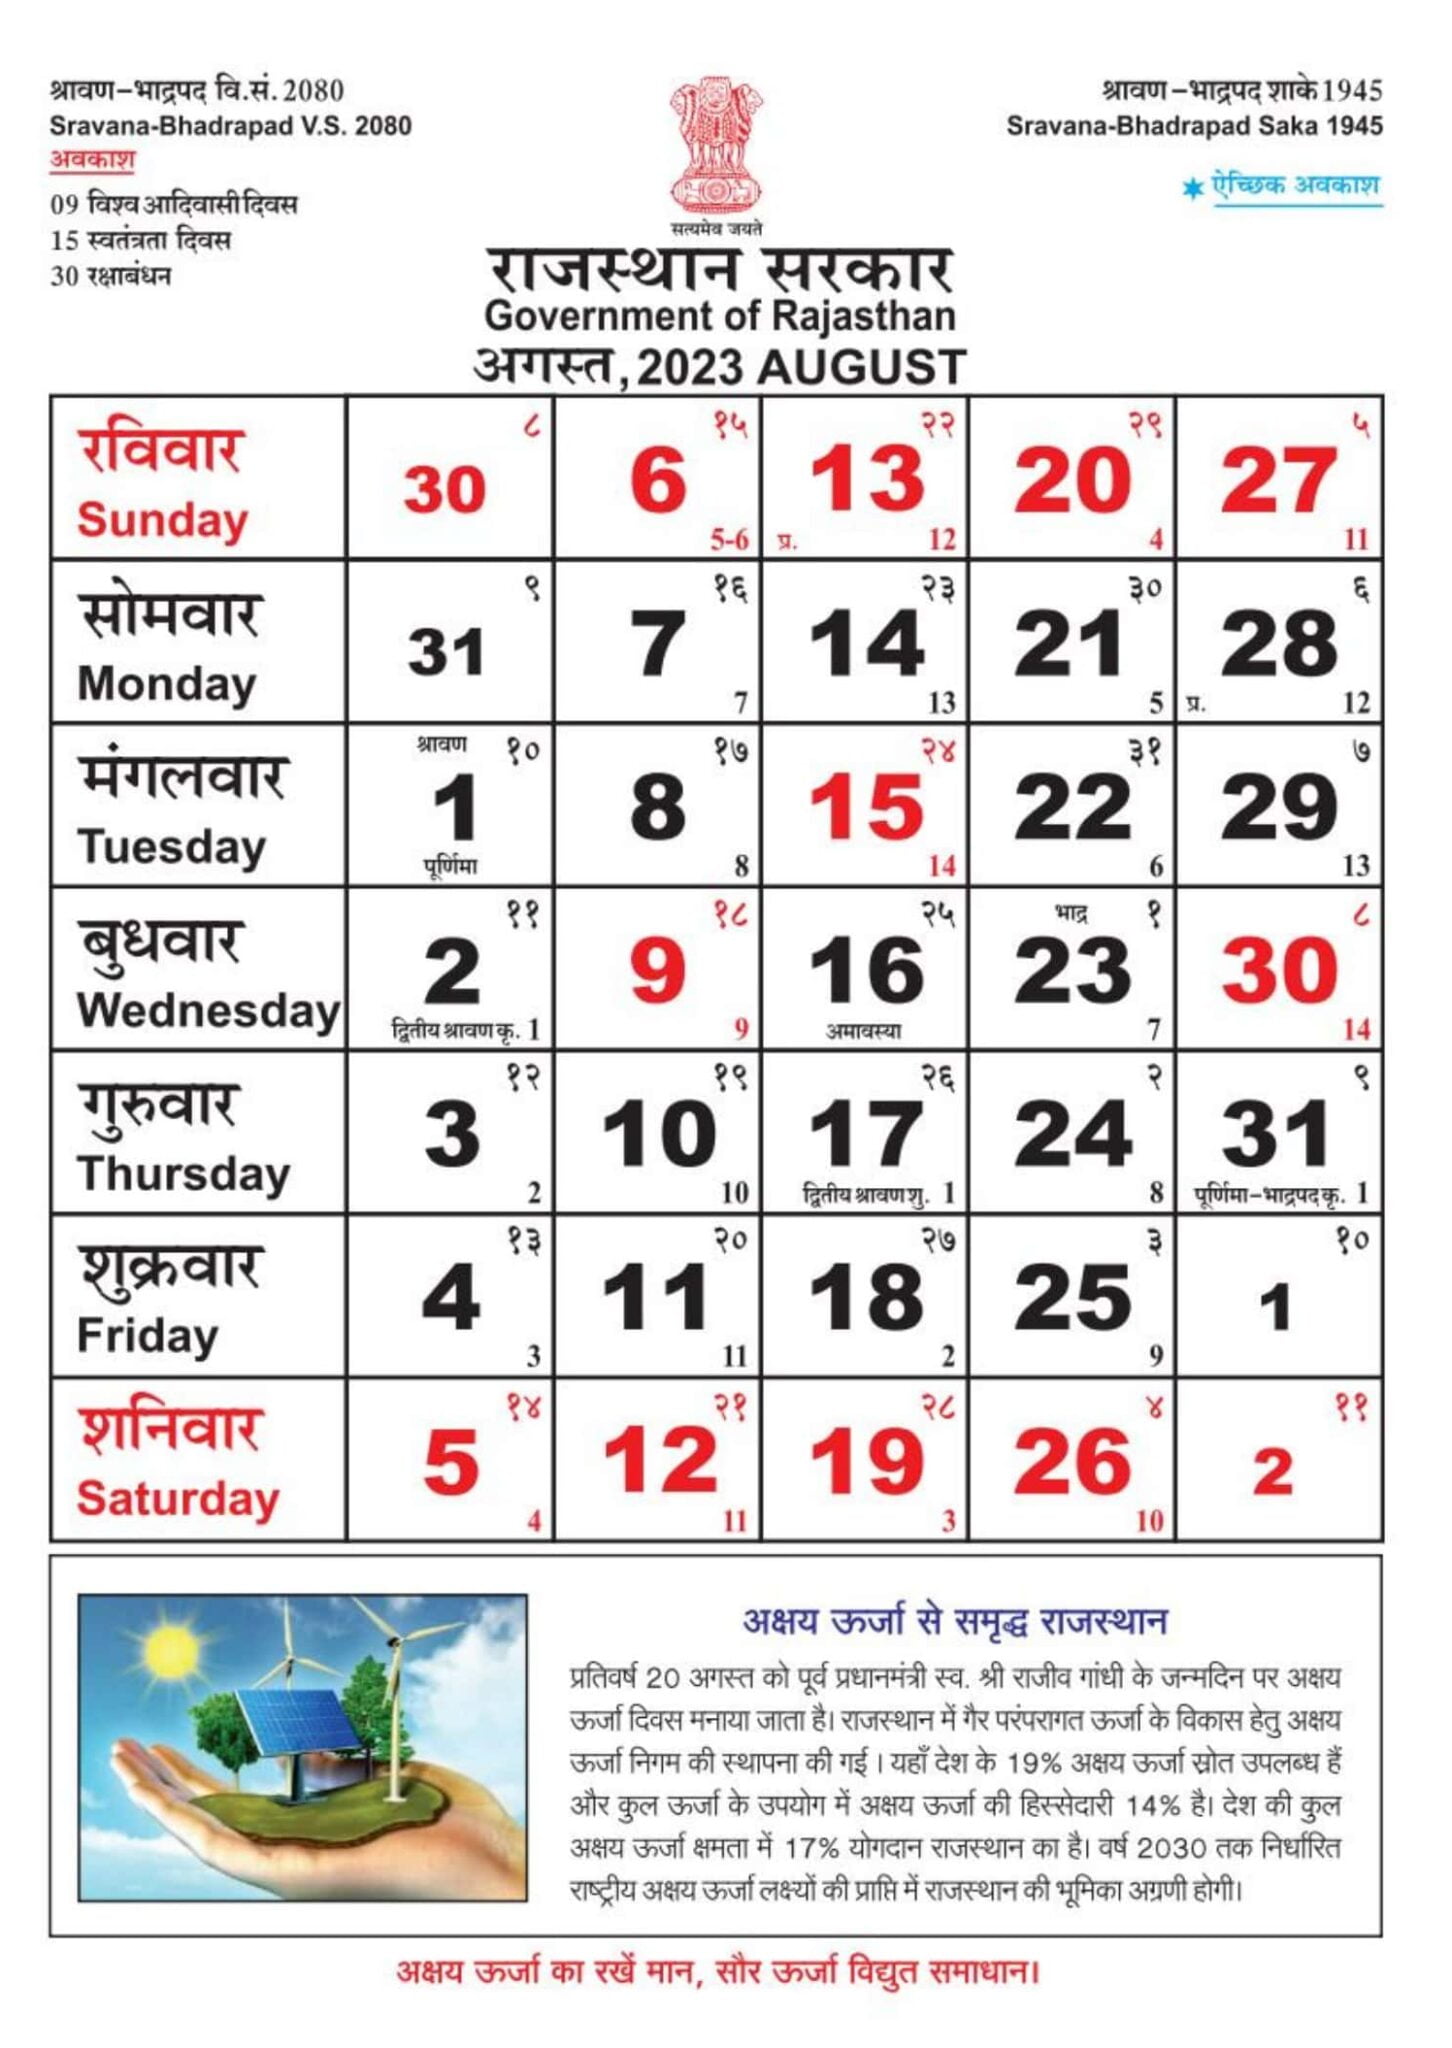 Rajasthan govt calendar 2023 pdf download